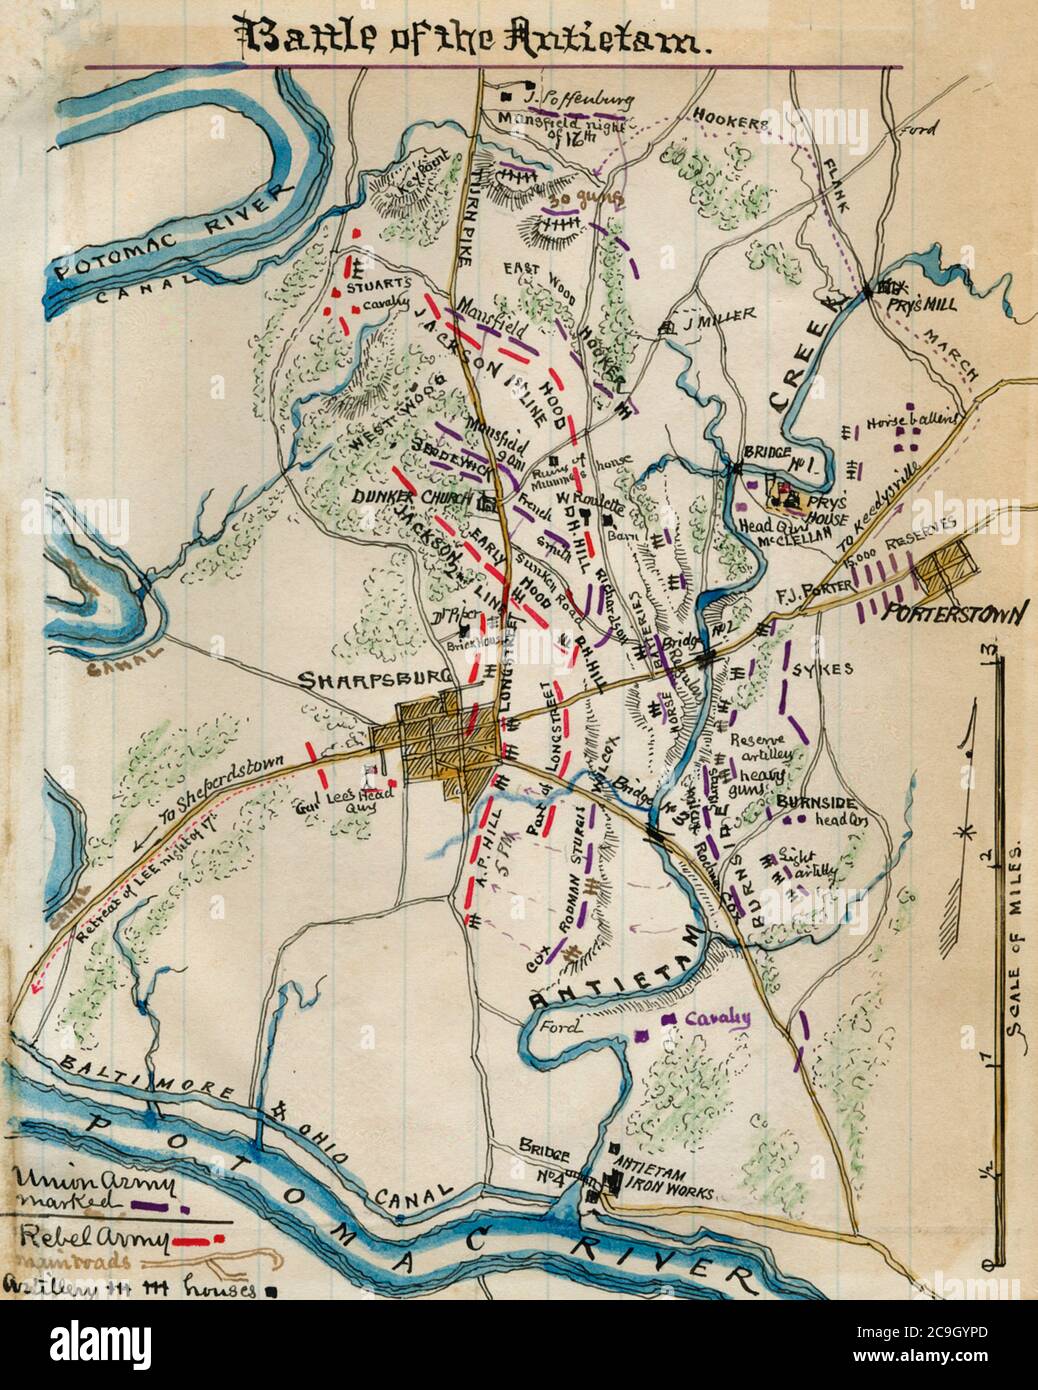 Schlacht von Antietam - vermittelt die Platzierung von Union und Konföderierten Kräfte in Washington County, MD., um Sharpsburg während der Schlacht von Antietam am 17. September 1862 Stockfoto